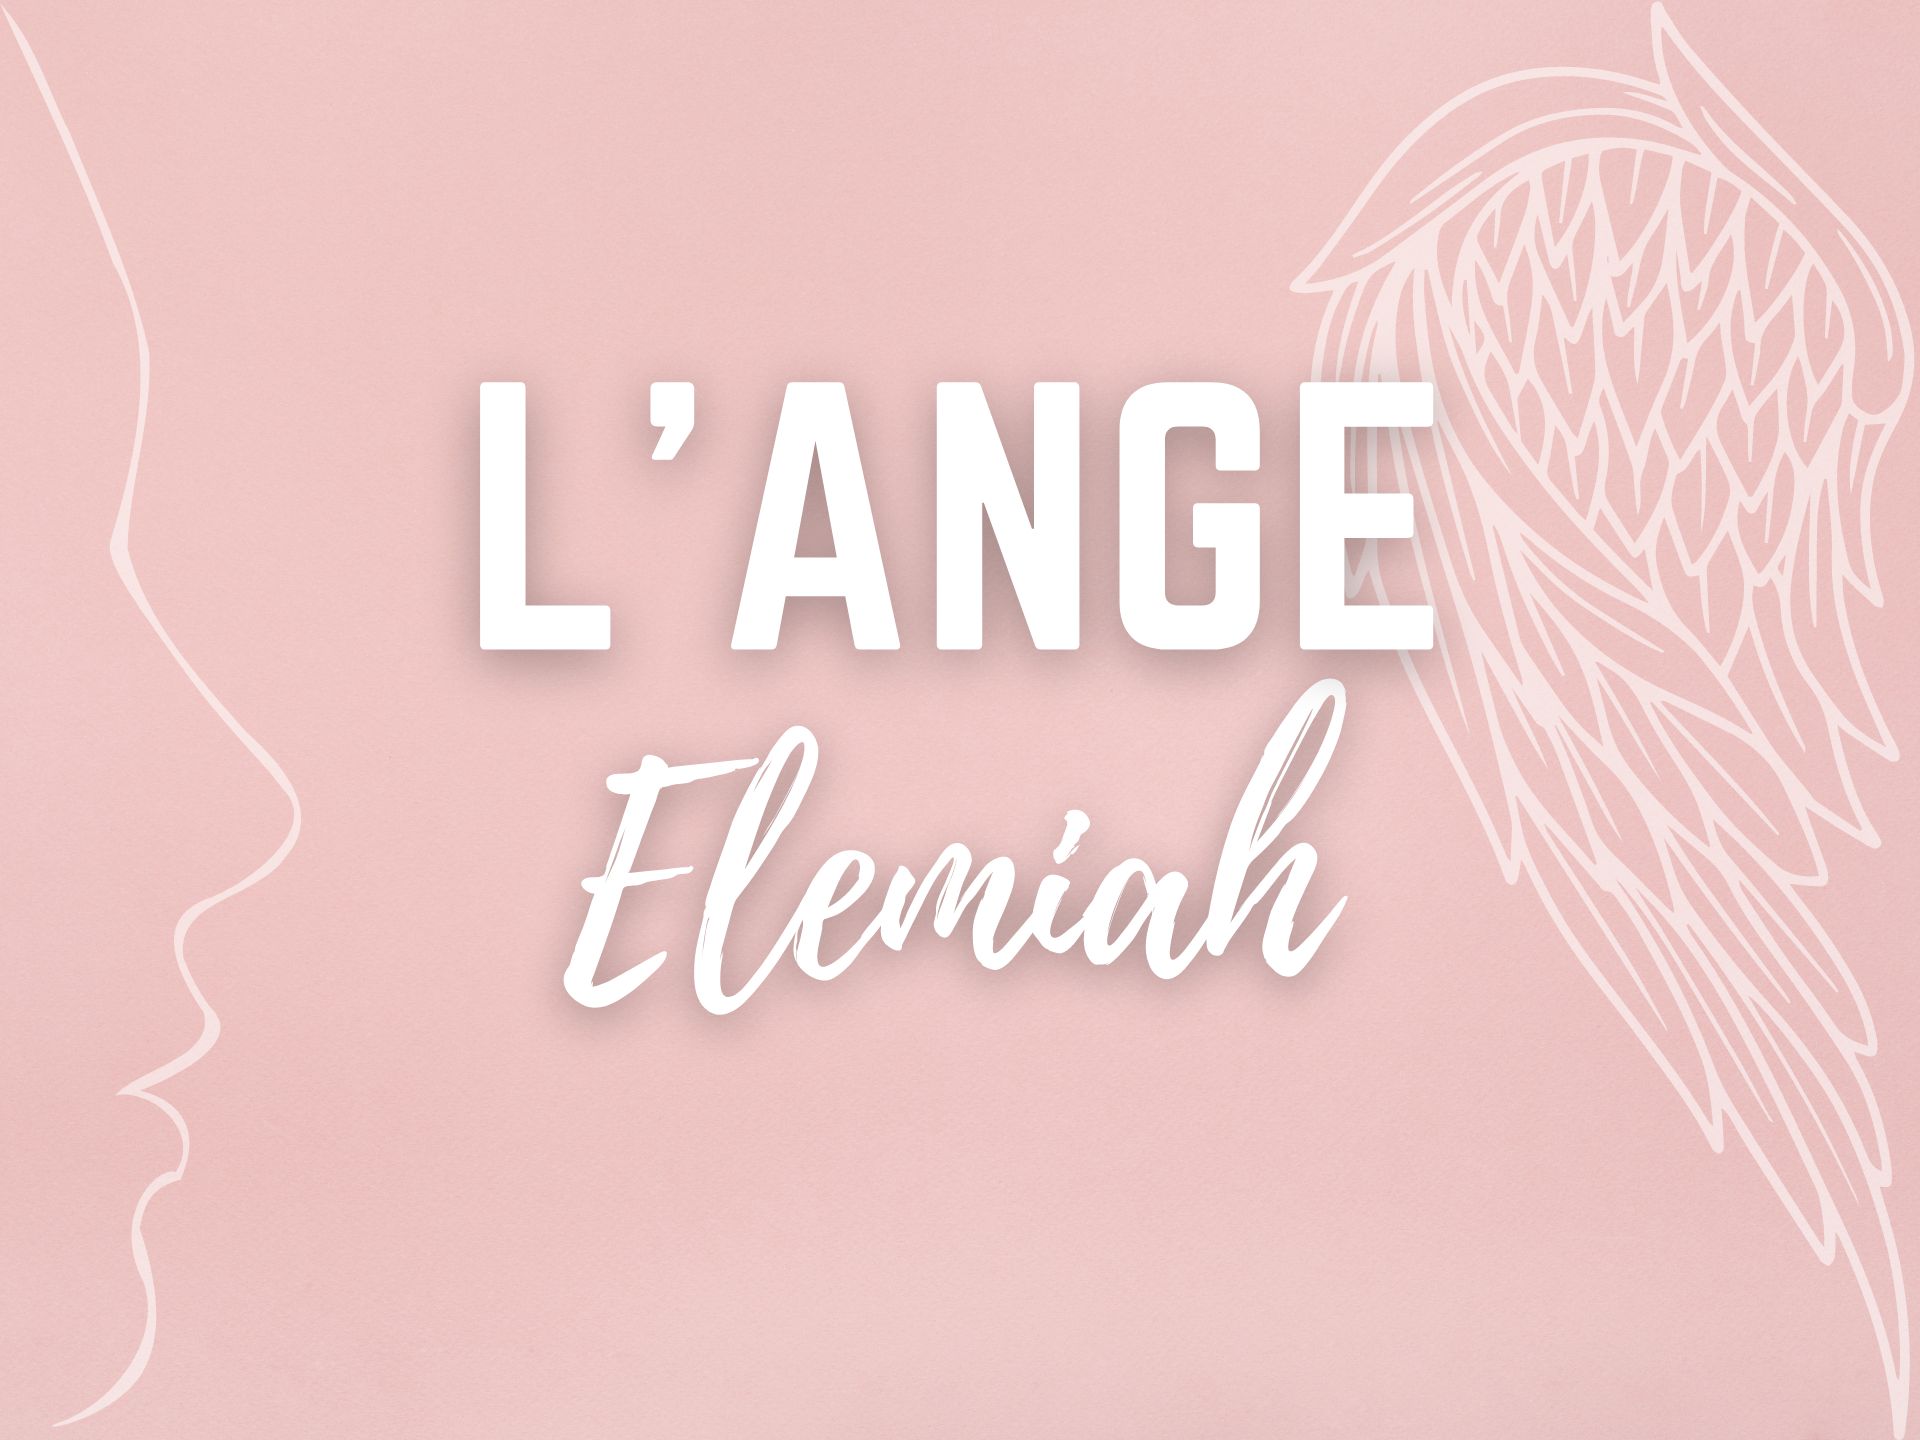 Ange Elemiah